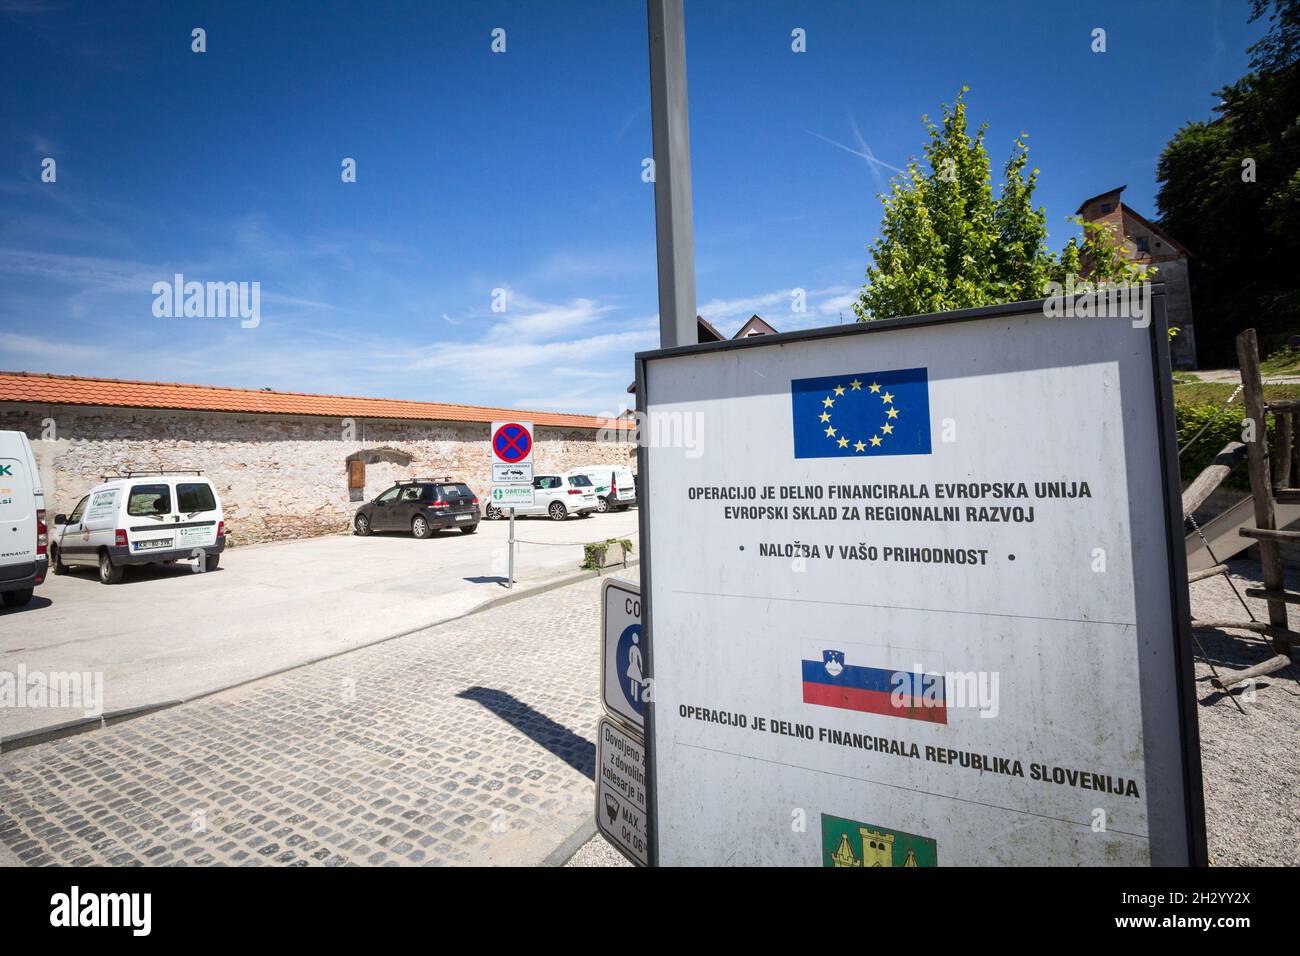 Das Bild eines Schildes, das auf ein Wiederaufbauprojekt hinweist, wird von der Europäischen Union im slowenischen Skofja loka finanziert und gespendet. Stockfoto